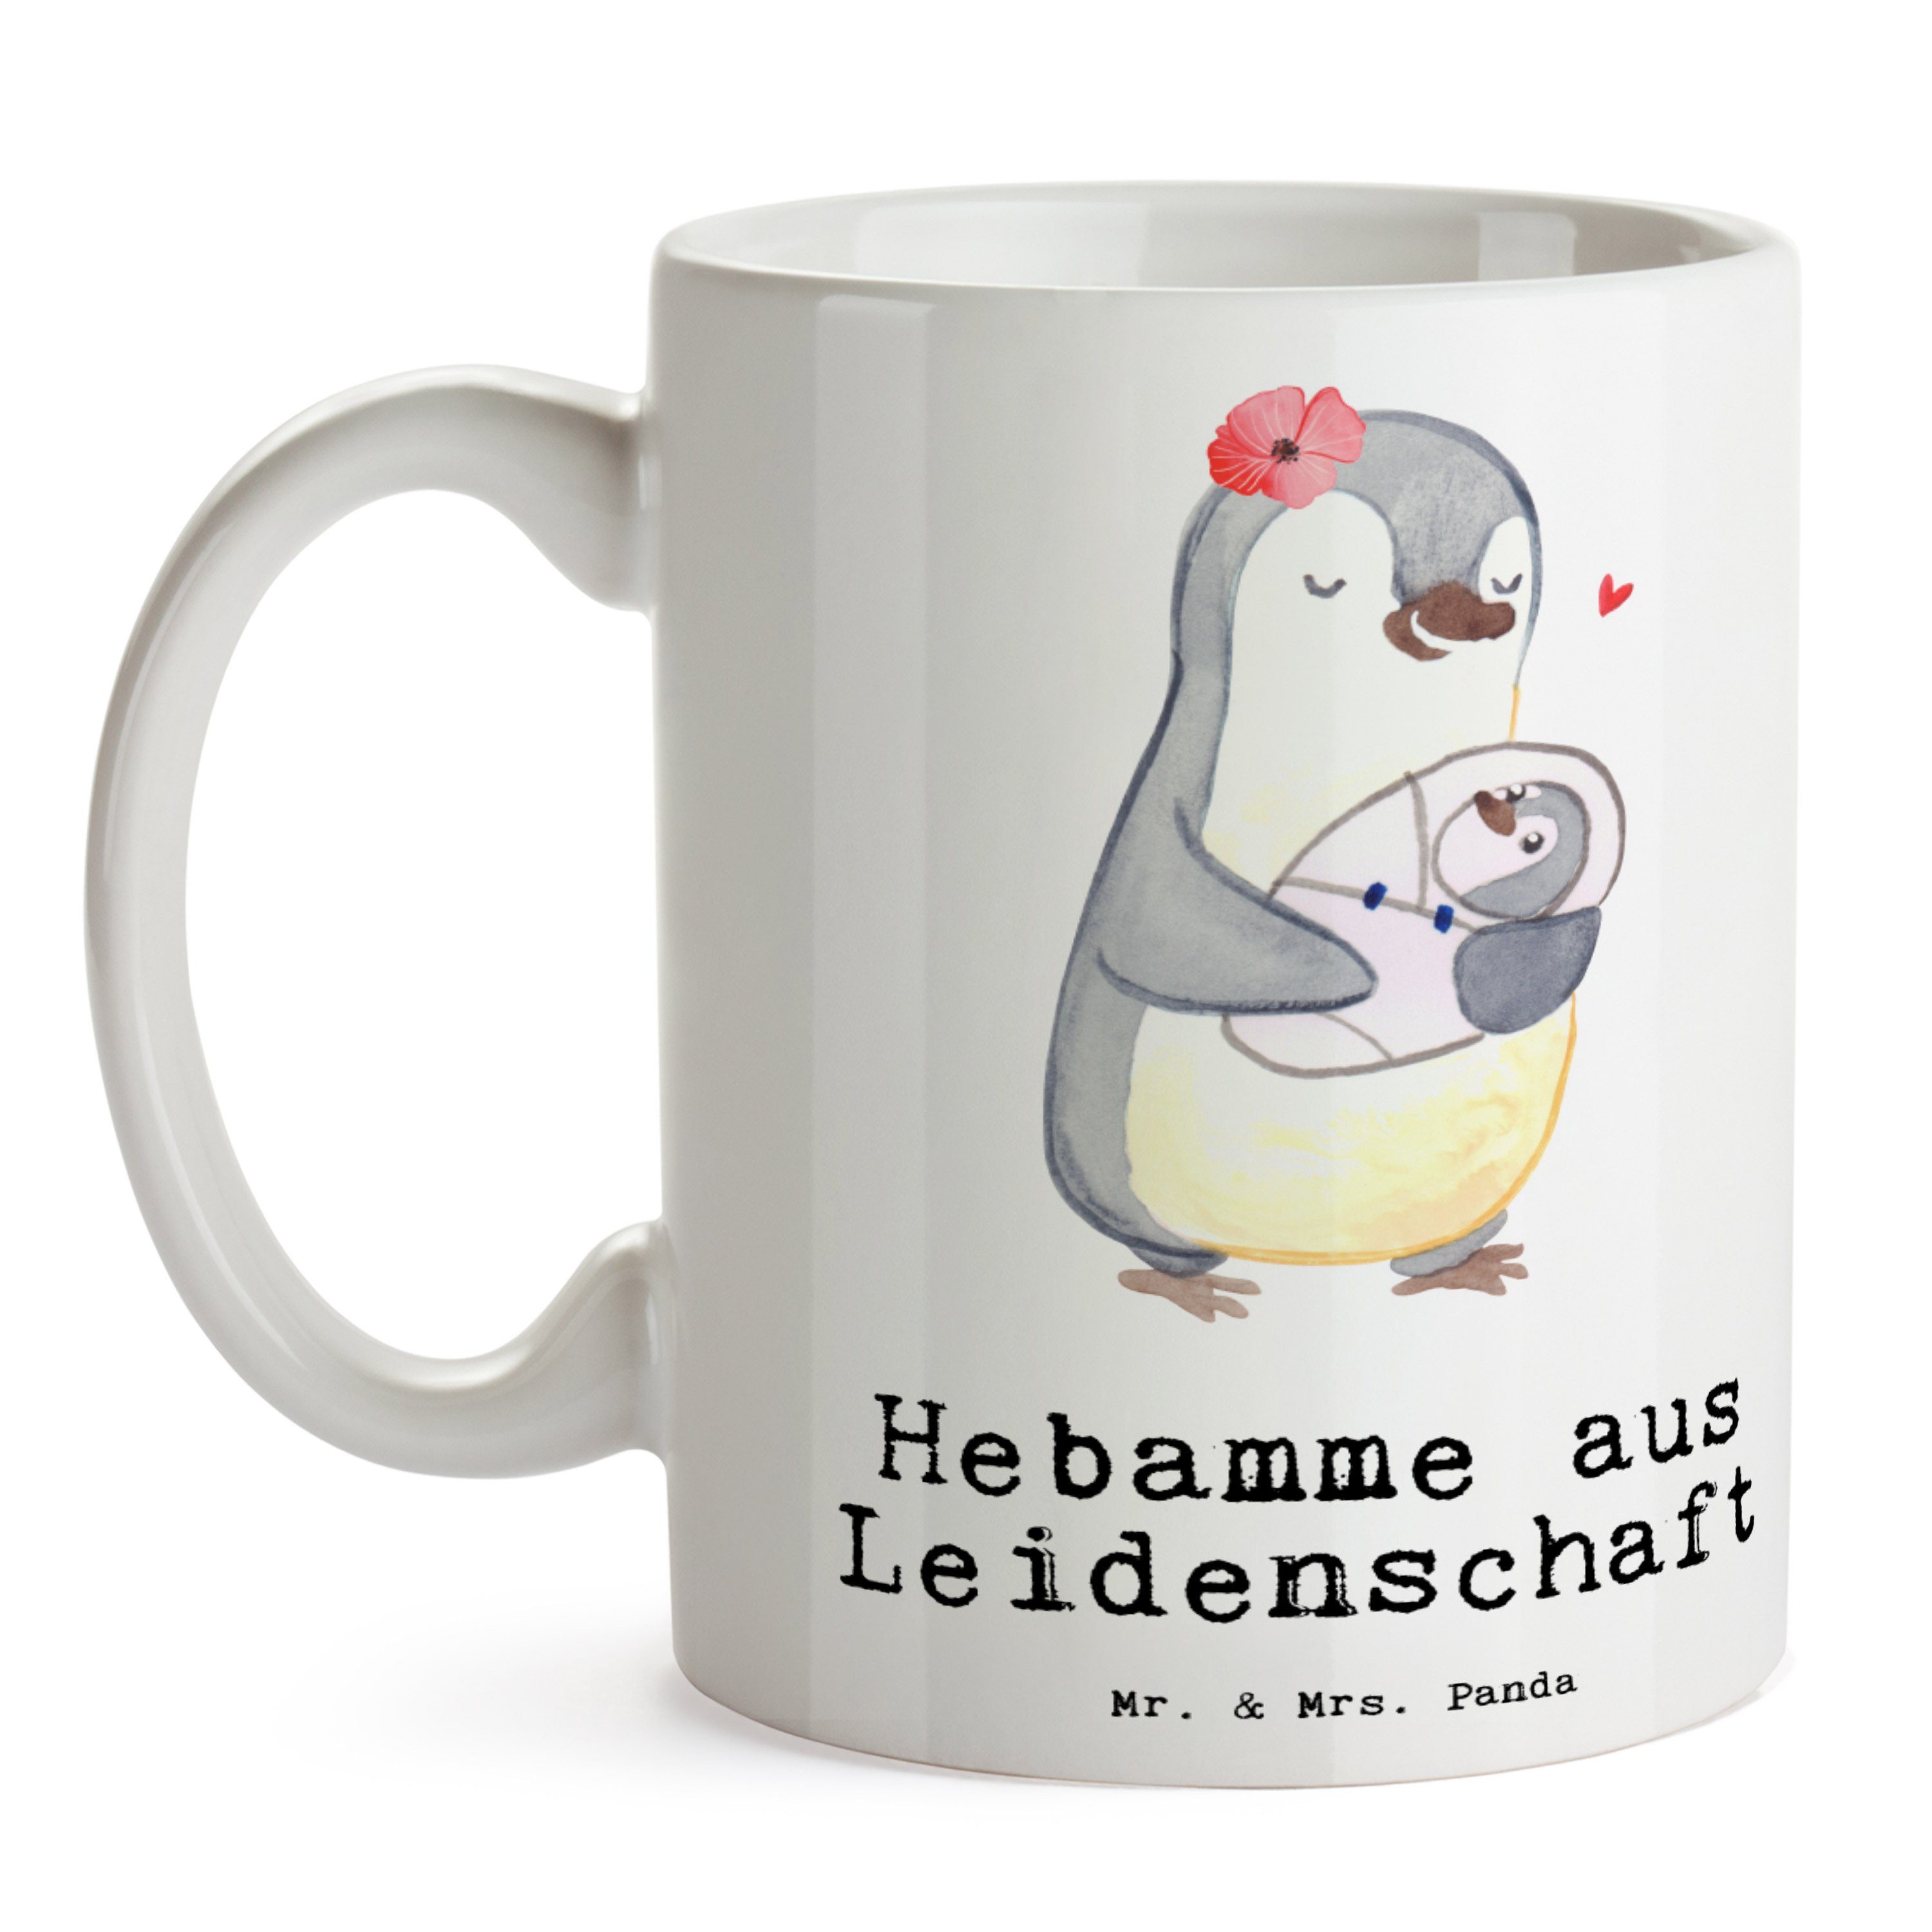 - Leidenschaft aus Mrs. Jubiläum, Panda Mr. - Hebamme & Geschenk, Geburtshelfer, Tasse Keramik Weiß